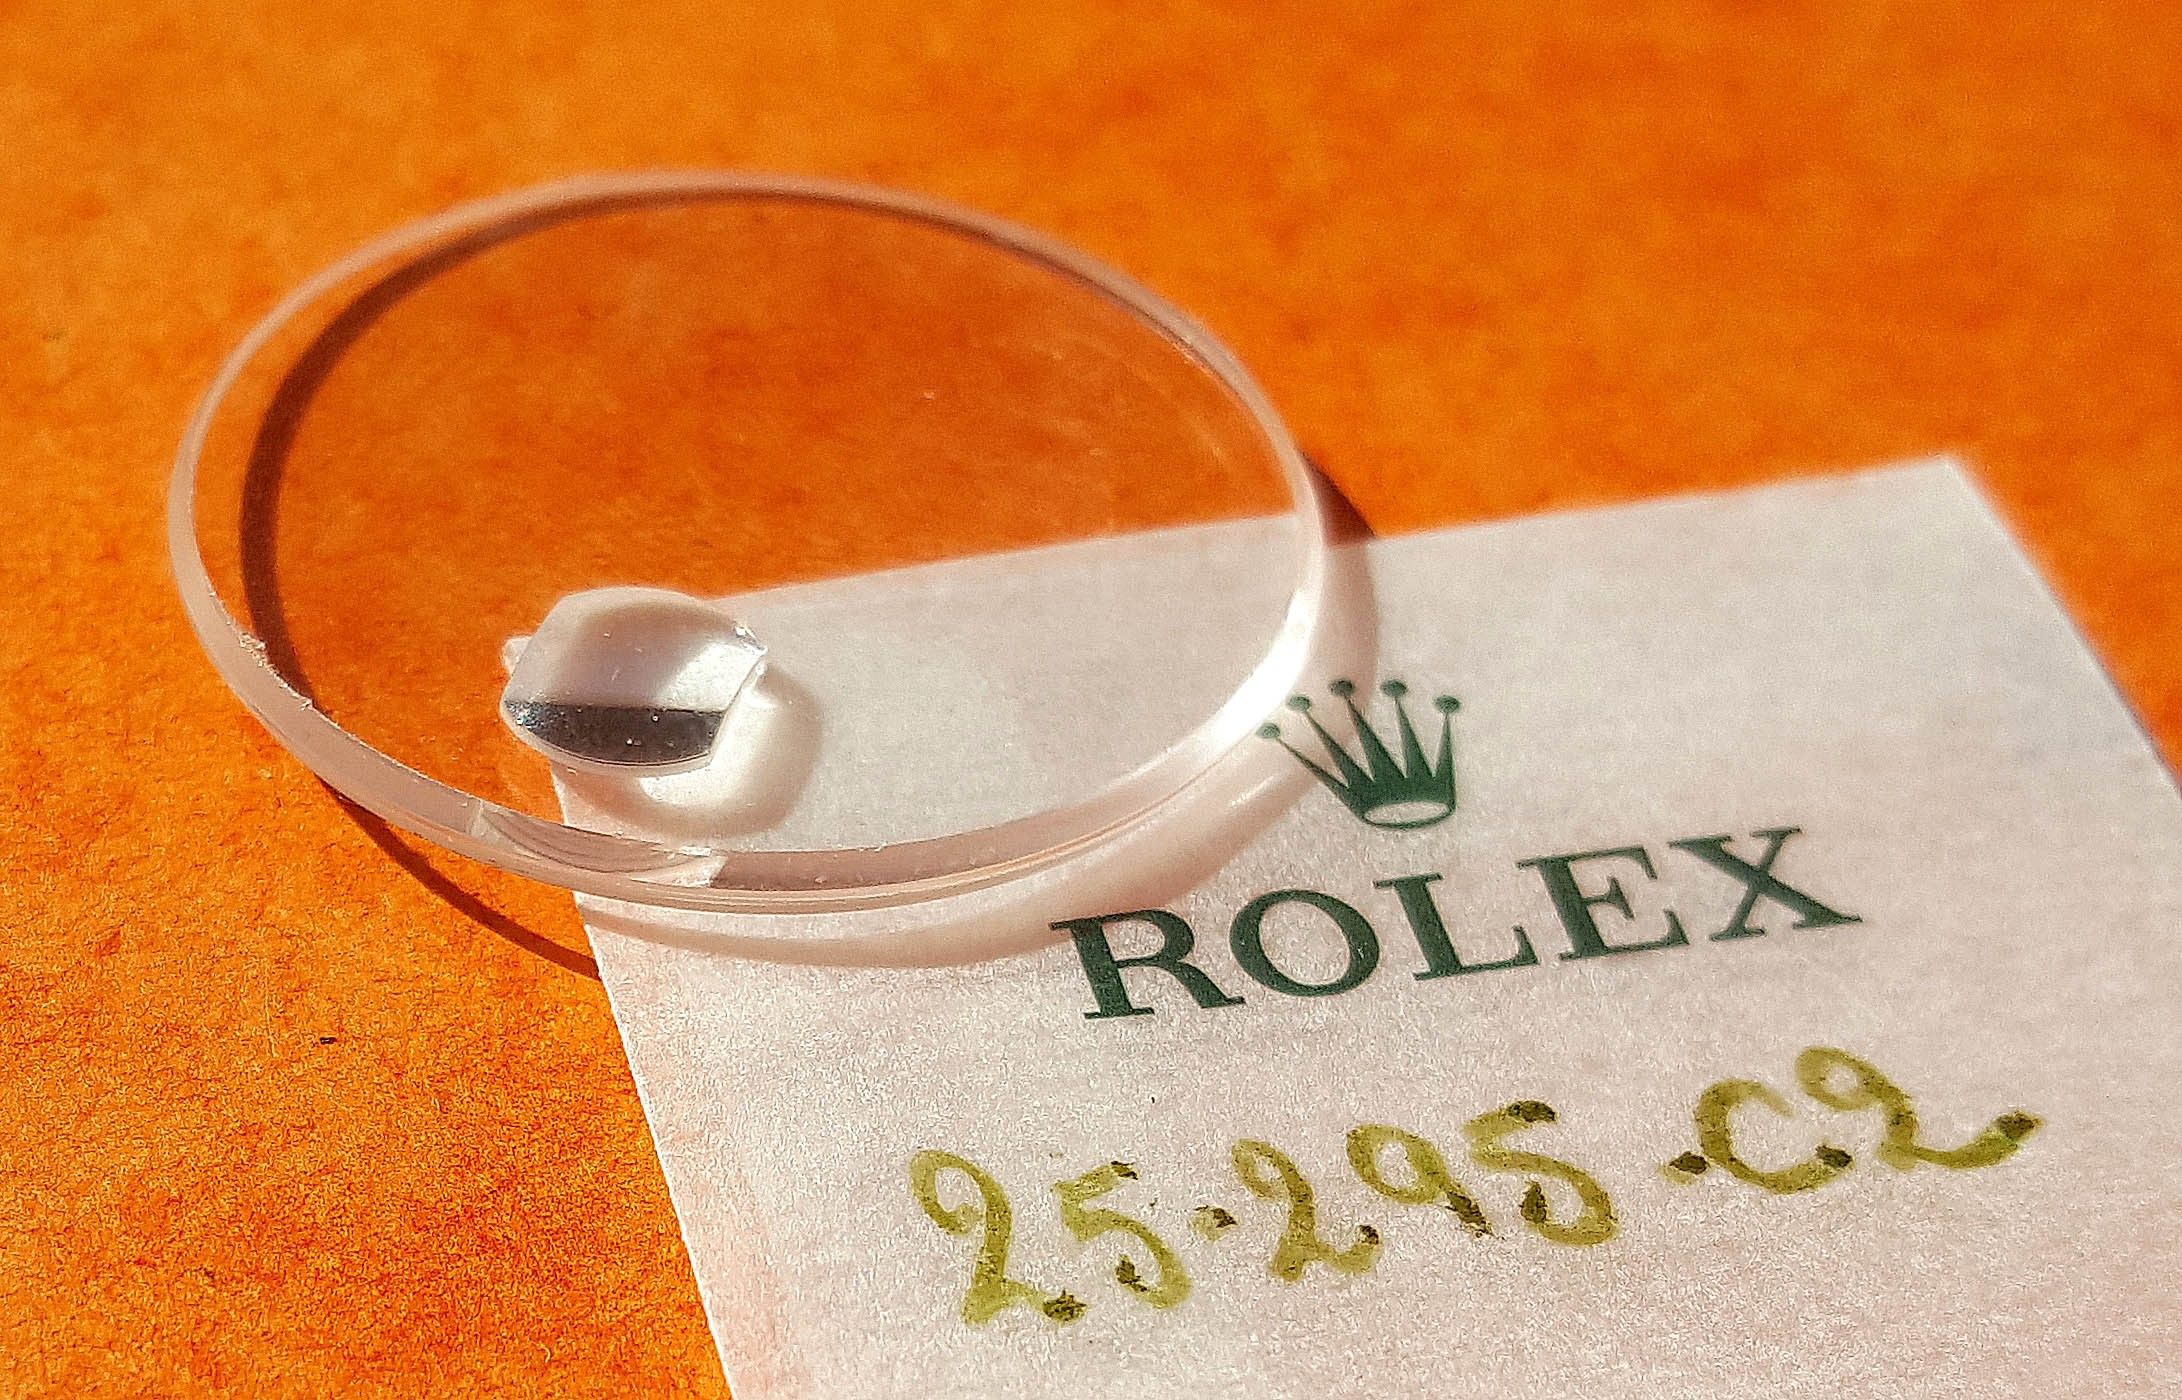 Rolex Original Sapphire Crystal B25-295-C2 Submariner Date 16800, 16610, GMT 16700, 16710, Datejust 16200, DayDate 18038